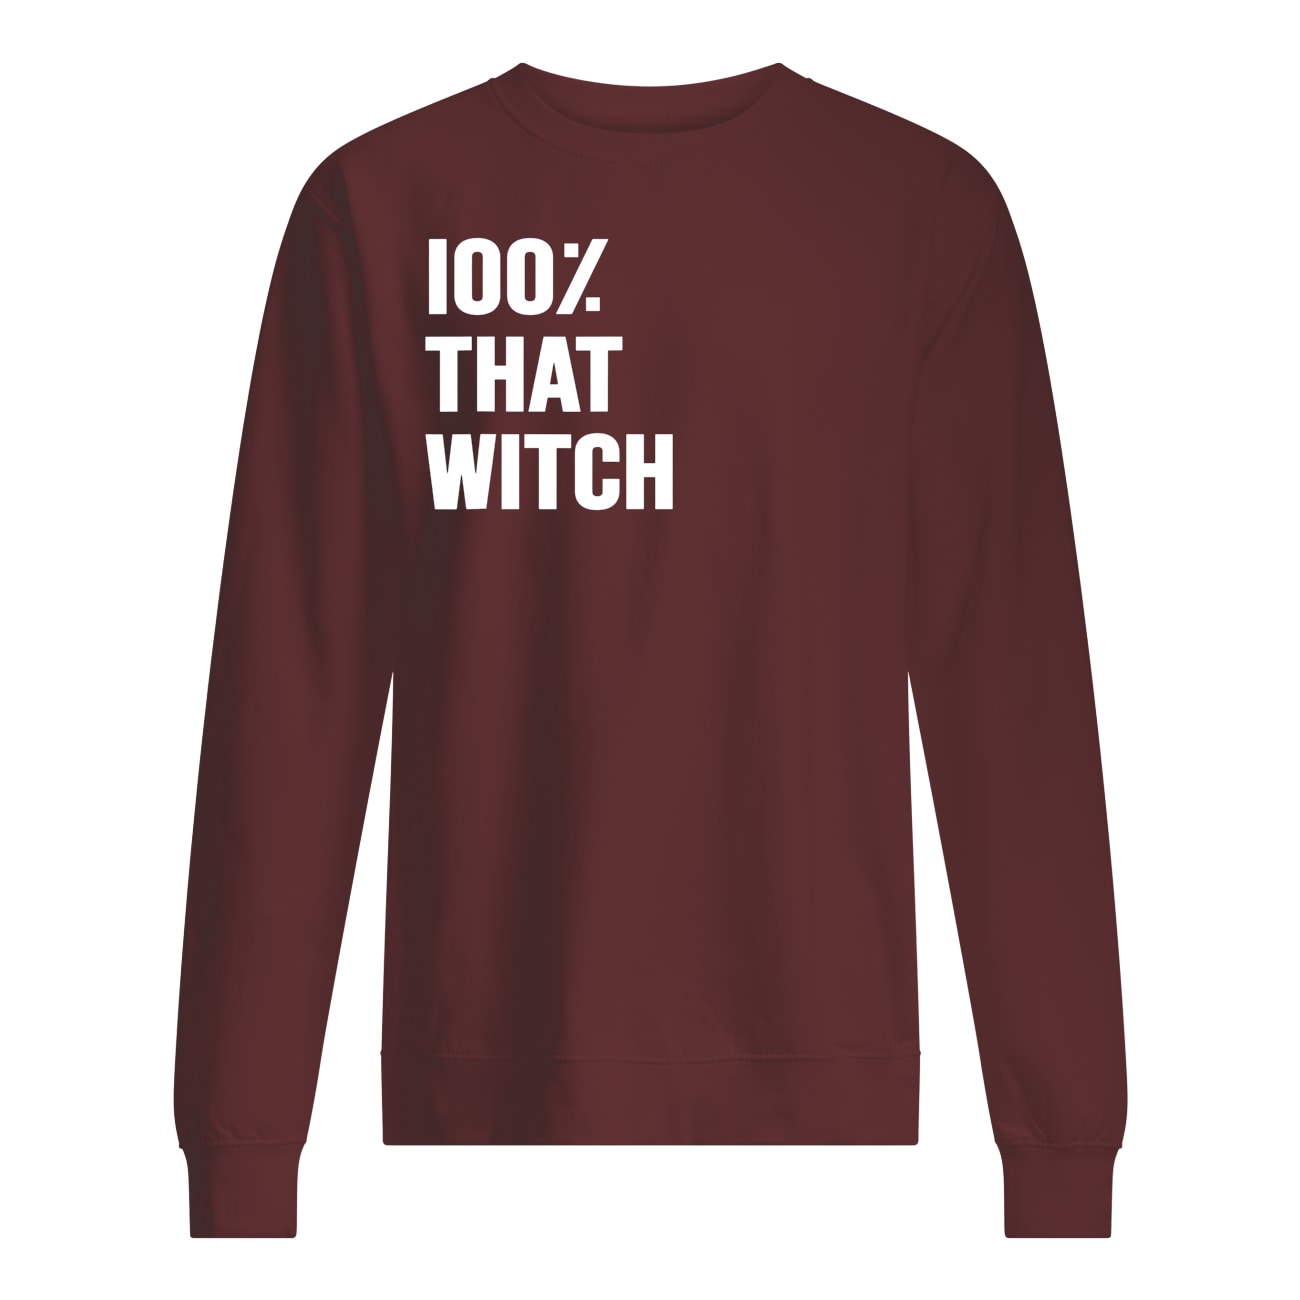 100% that witch sweatshirt